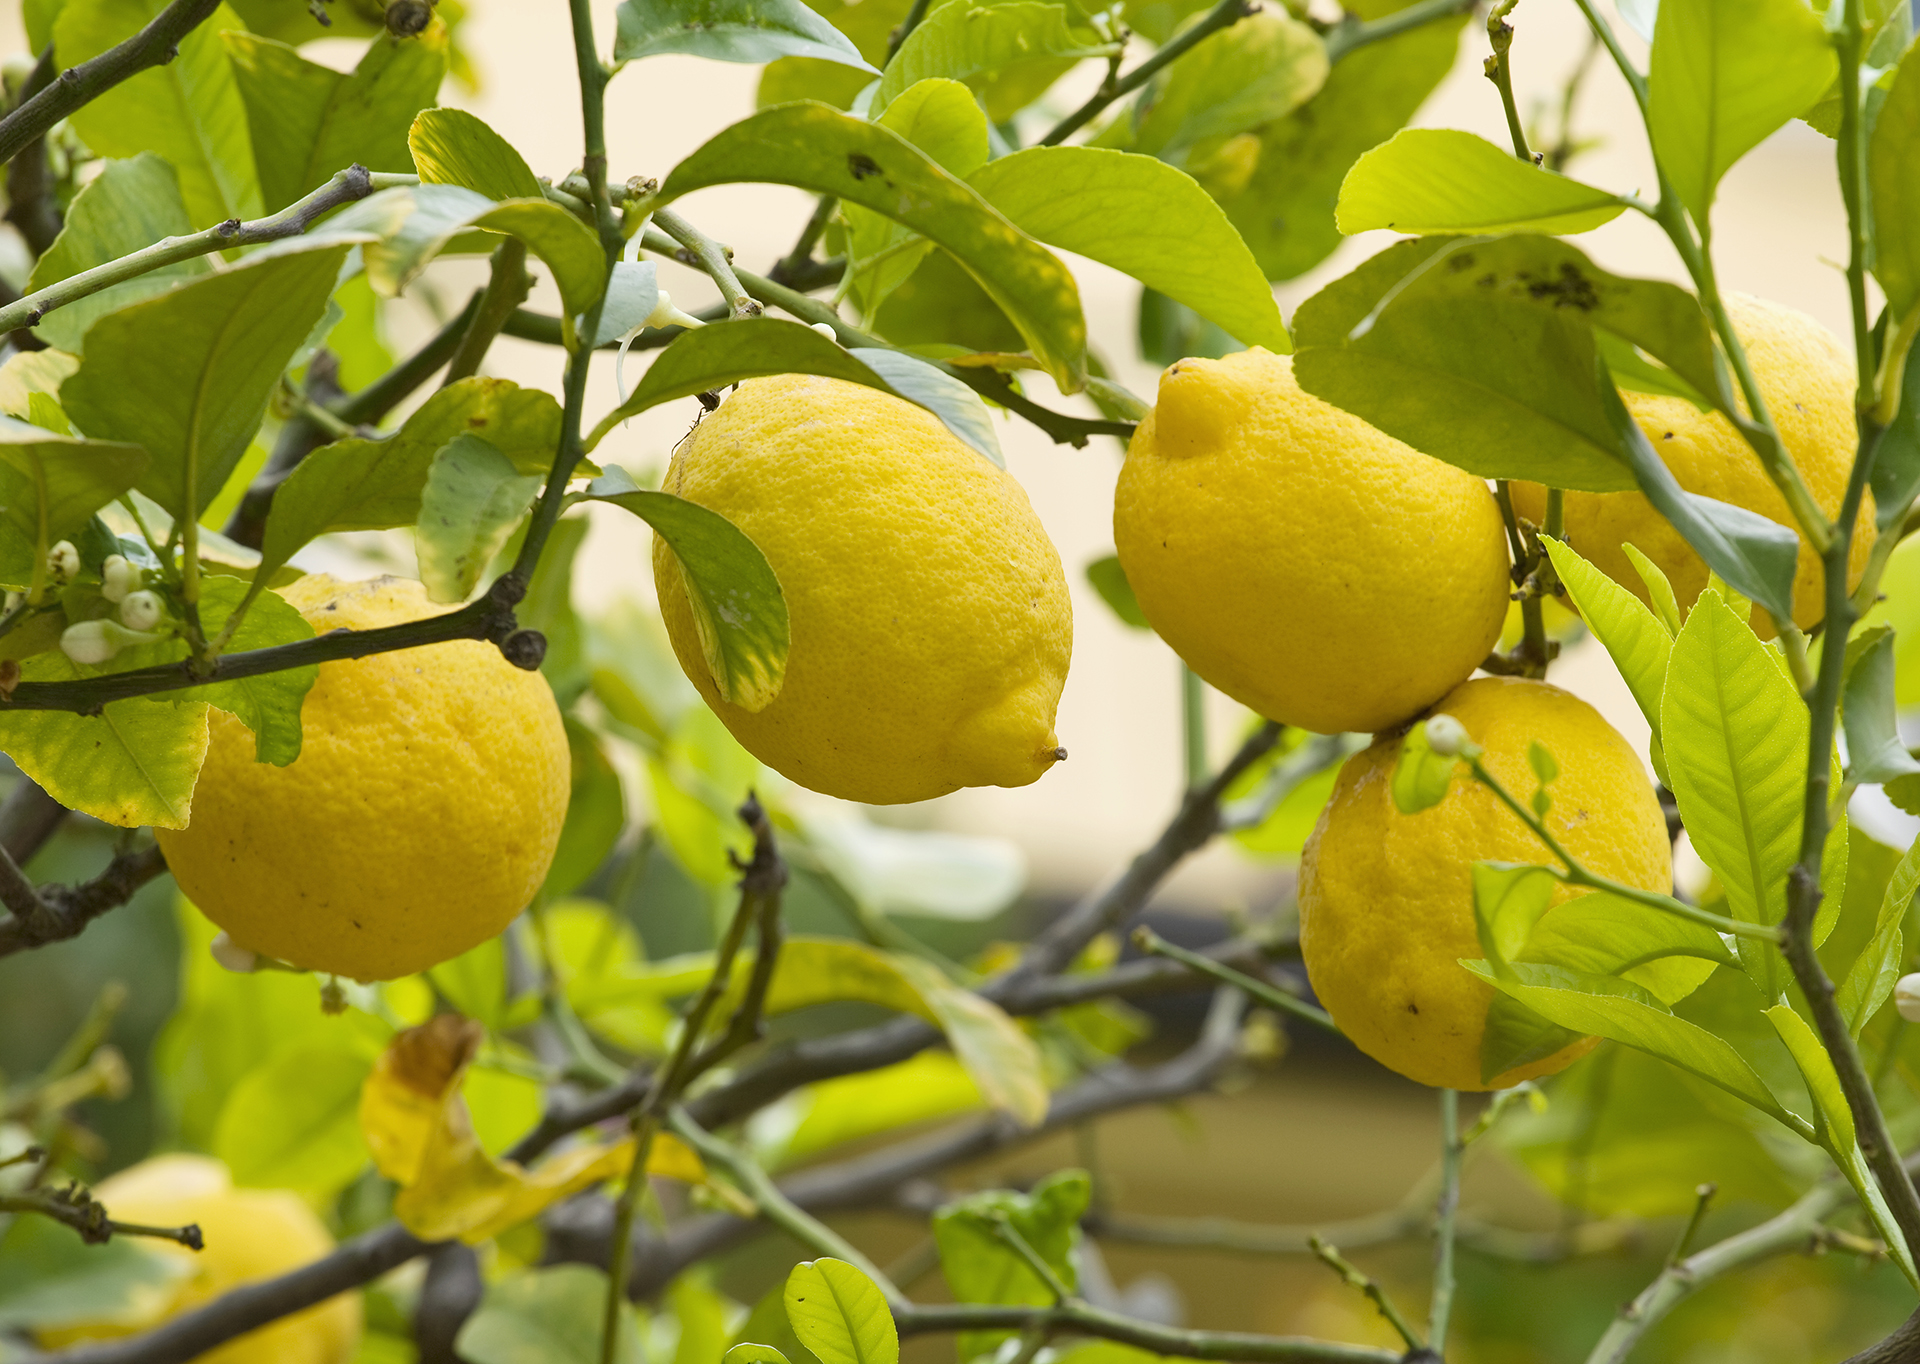 When to prune a lemon tree